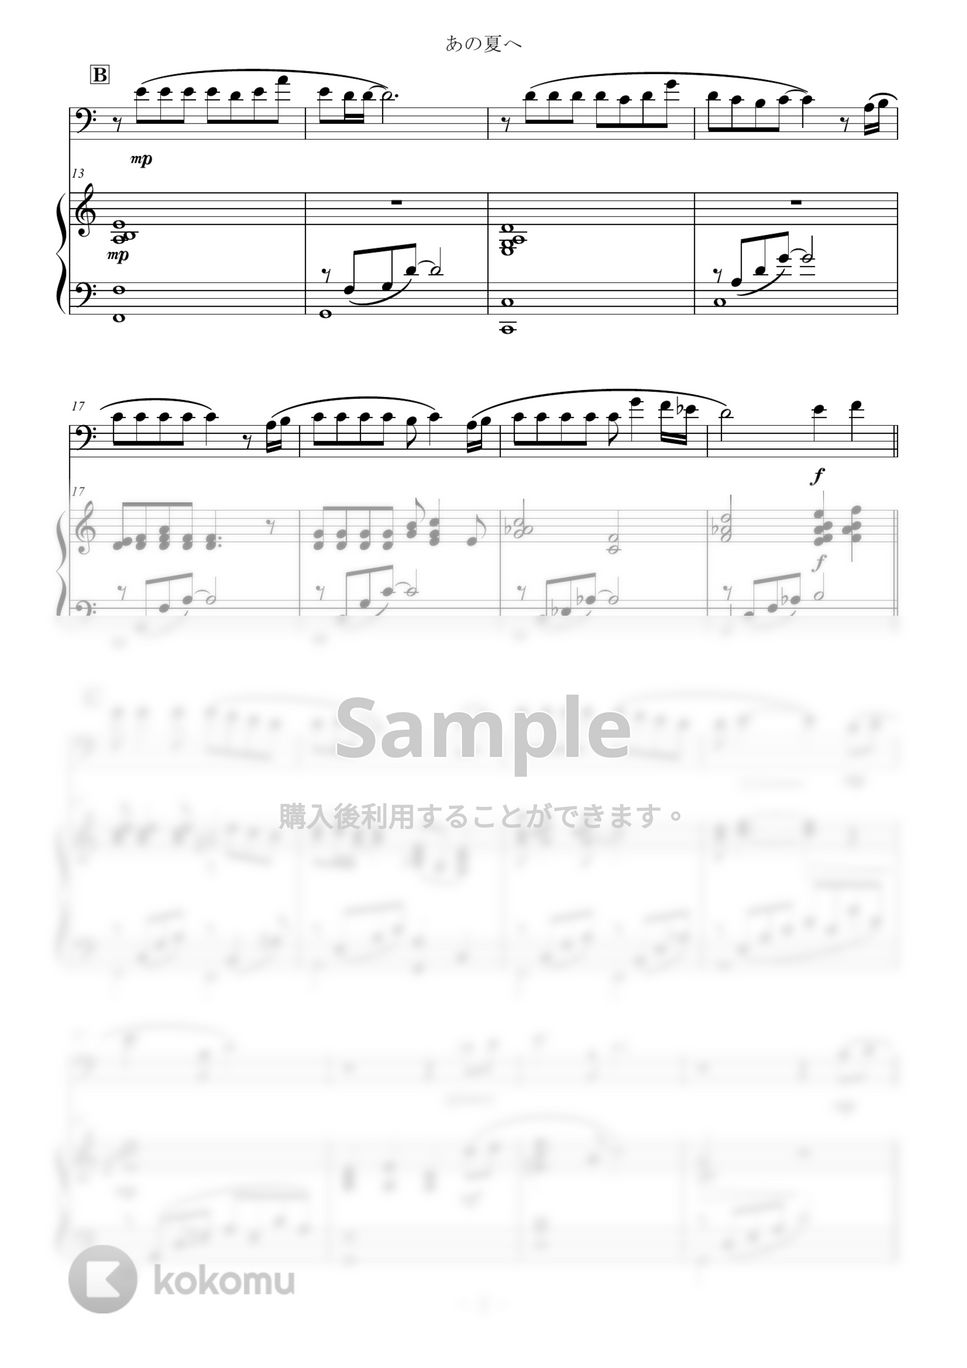 久石譲 - あの夏へ for Cello and Piano / from 千と千尋の神隠し One Summer's Day (スタジオジブリ/千と千尋の神隠し) by Zoe